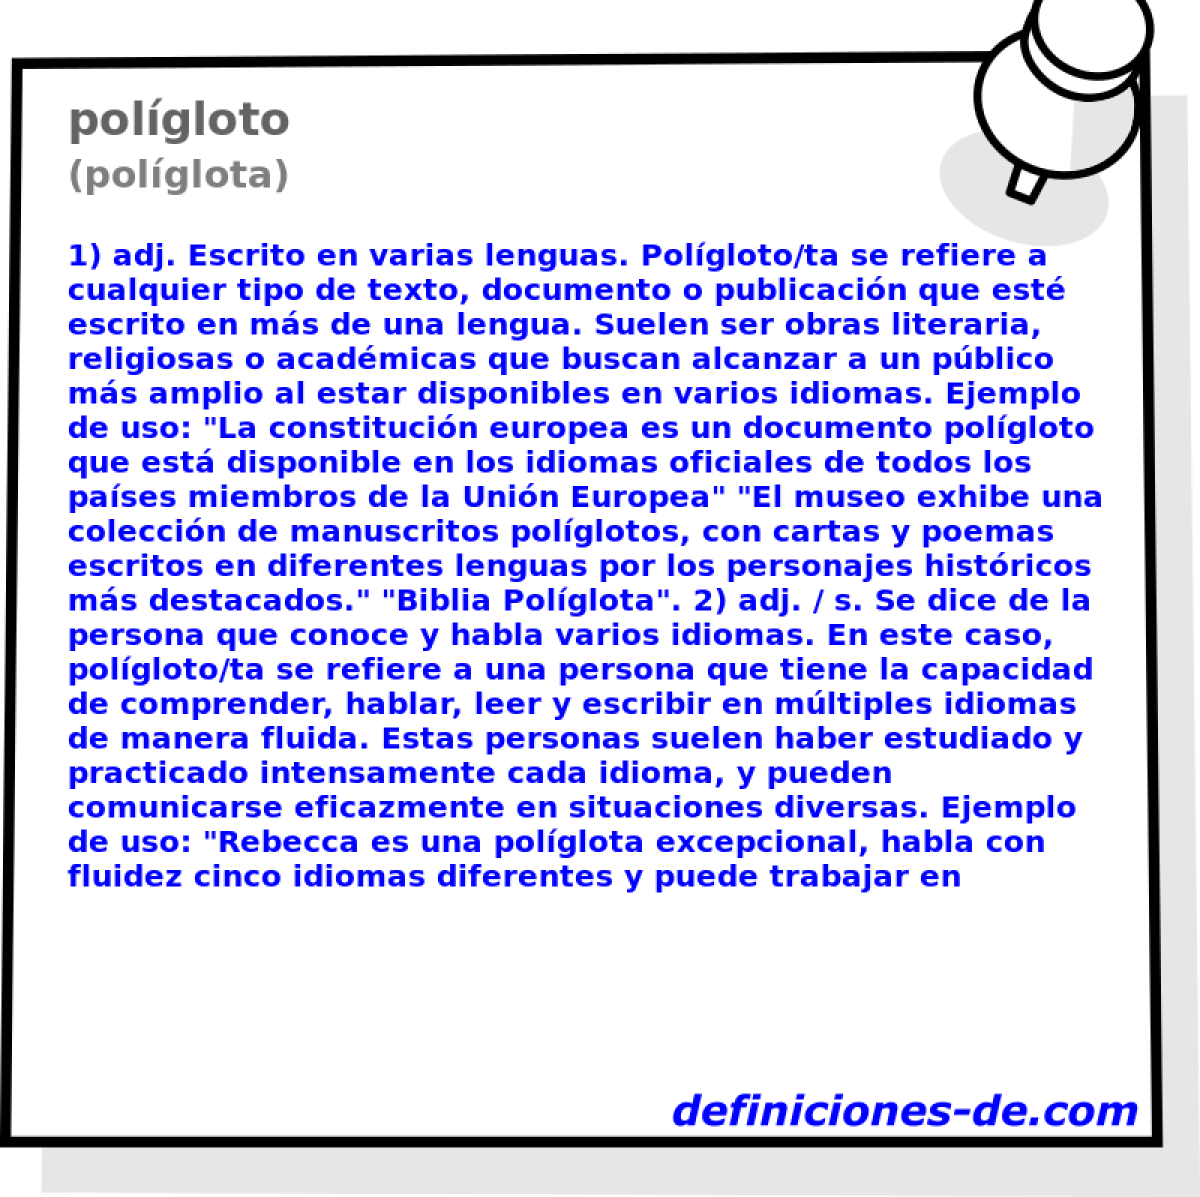 polgloto (polglota)